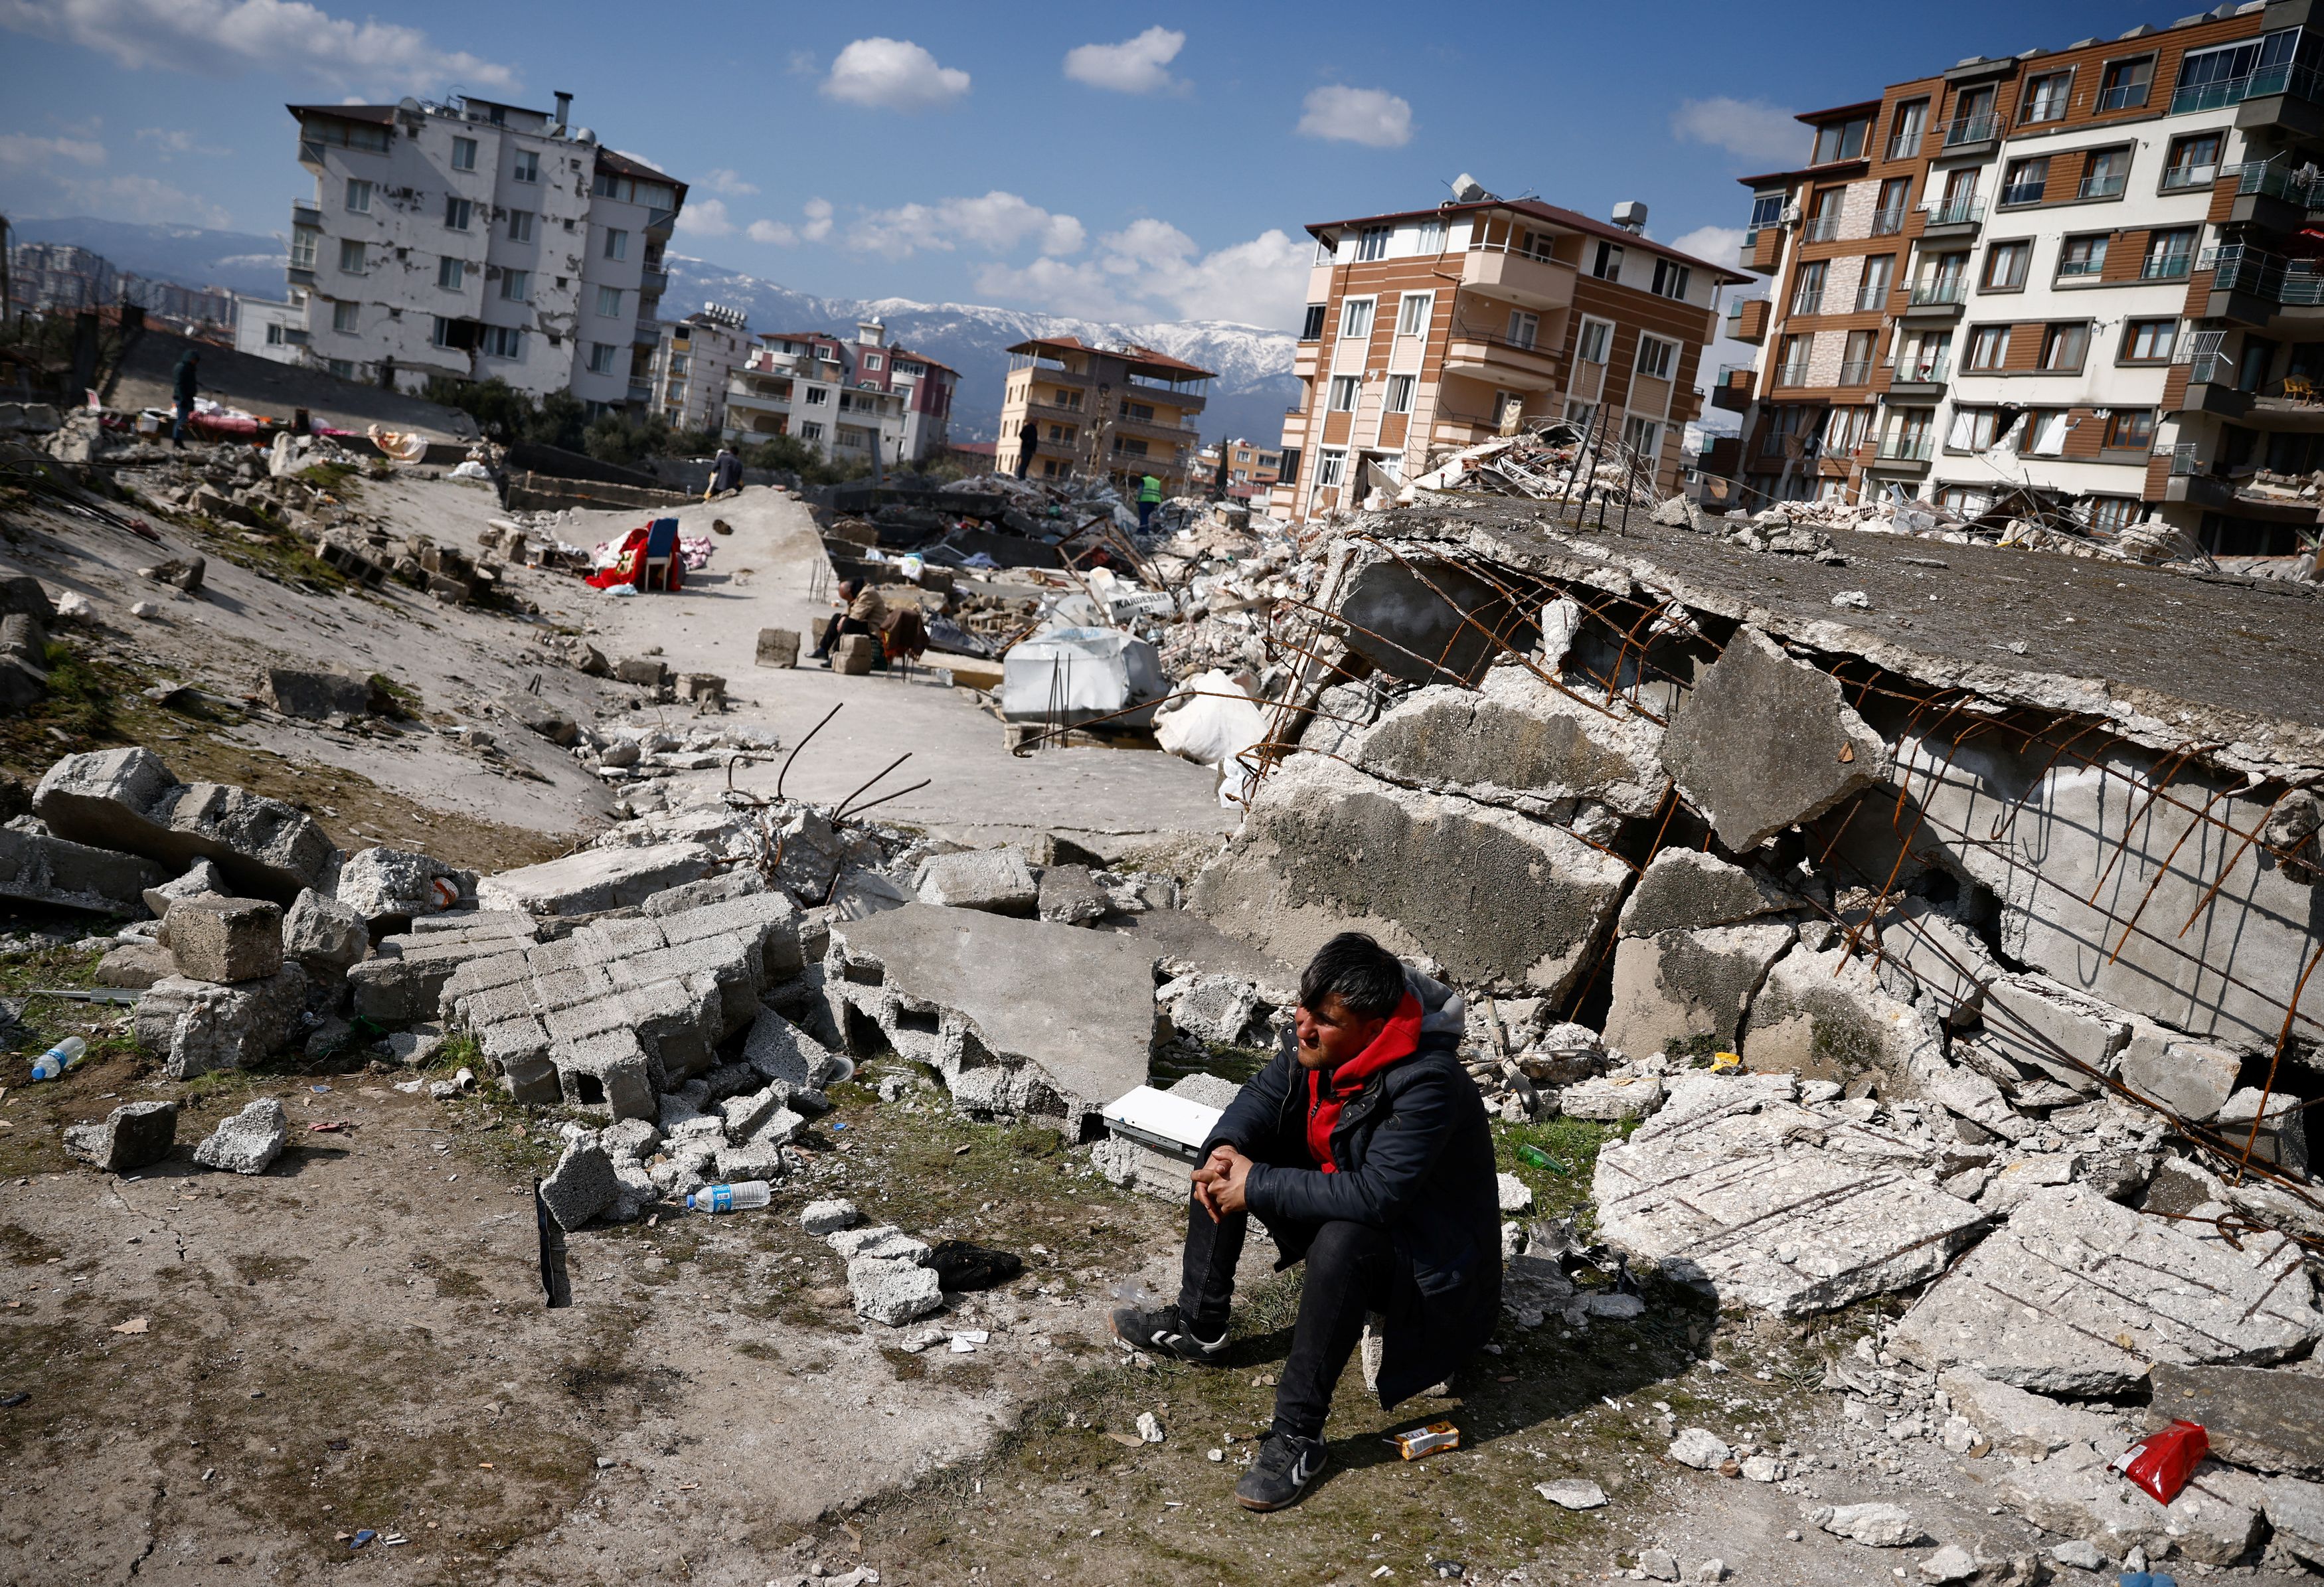 Σεισμός στην Τουρκία: «Η Αντιόχεια δεν υπάρχει πια» - Μαζί της χάθηκε ένας πολιτισμός, σημειώνουν οι New York Times